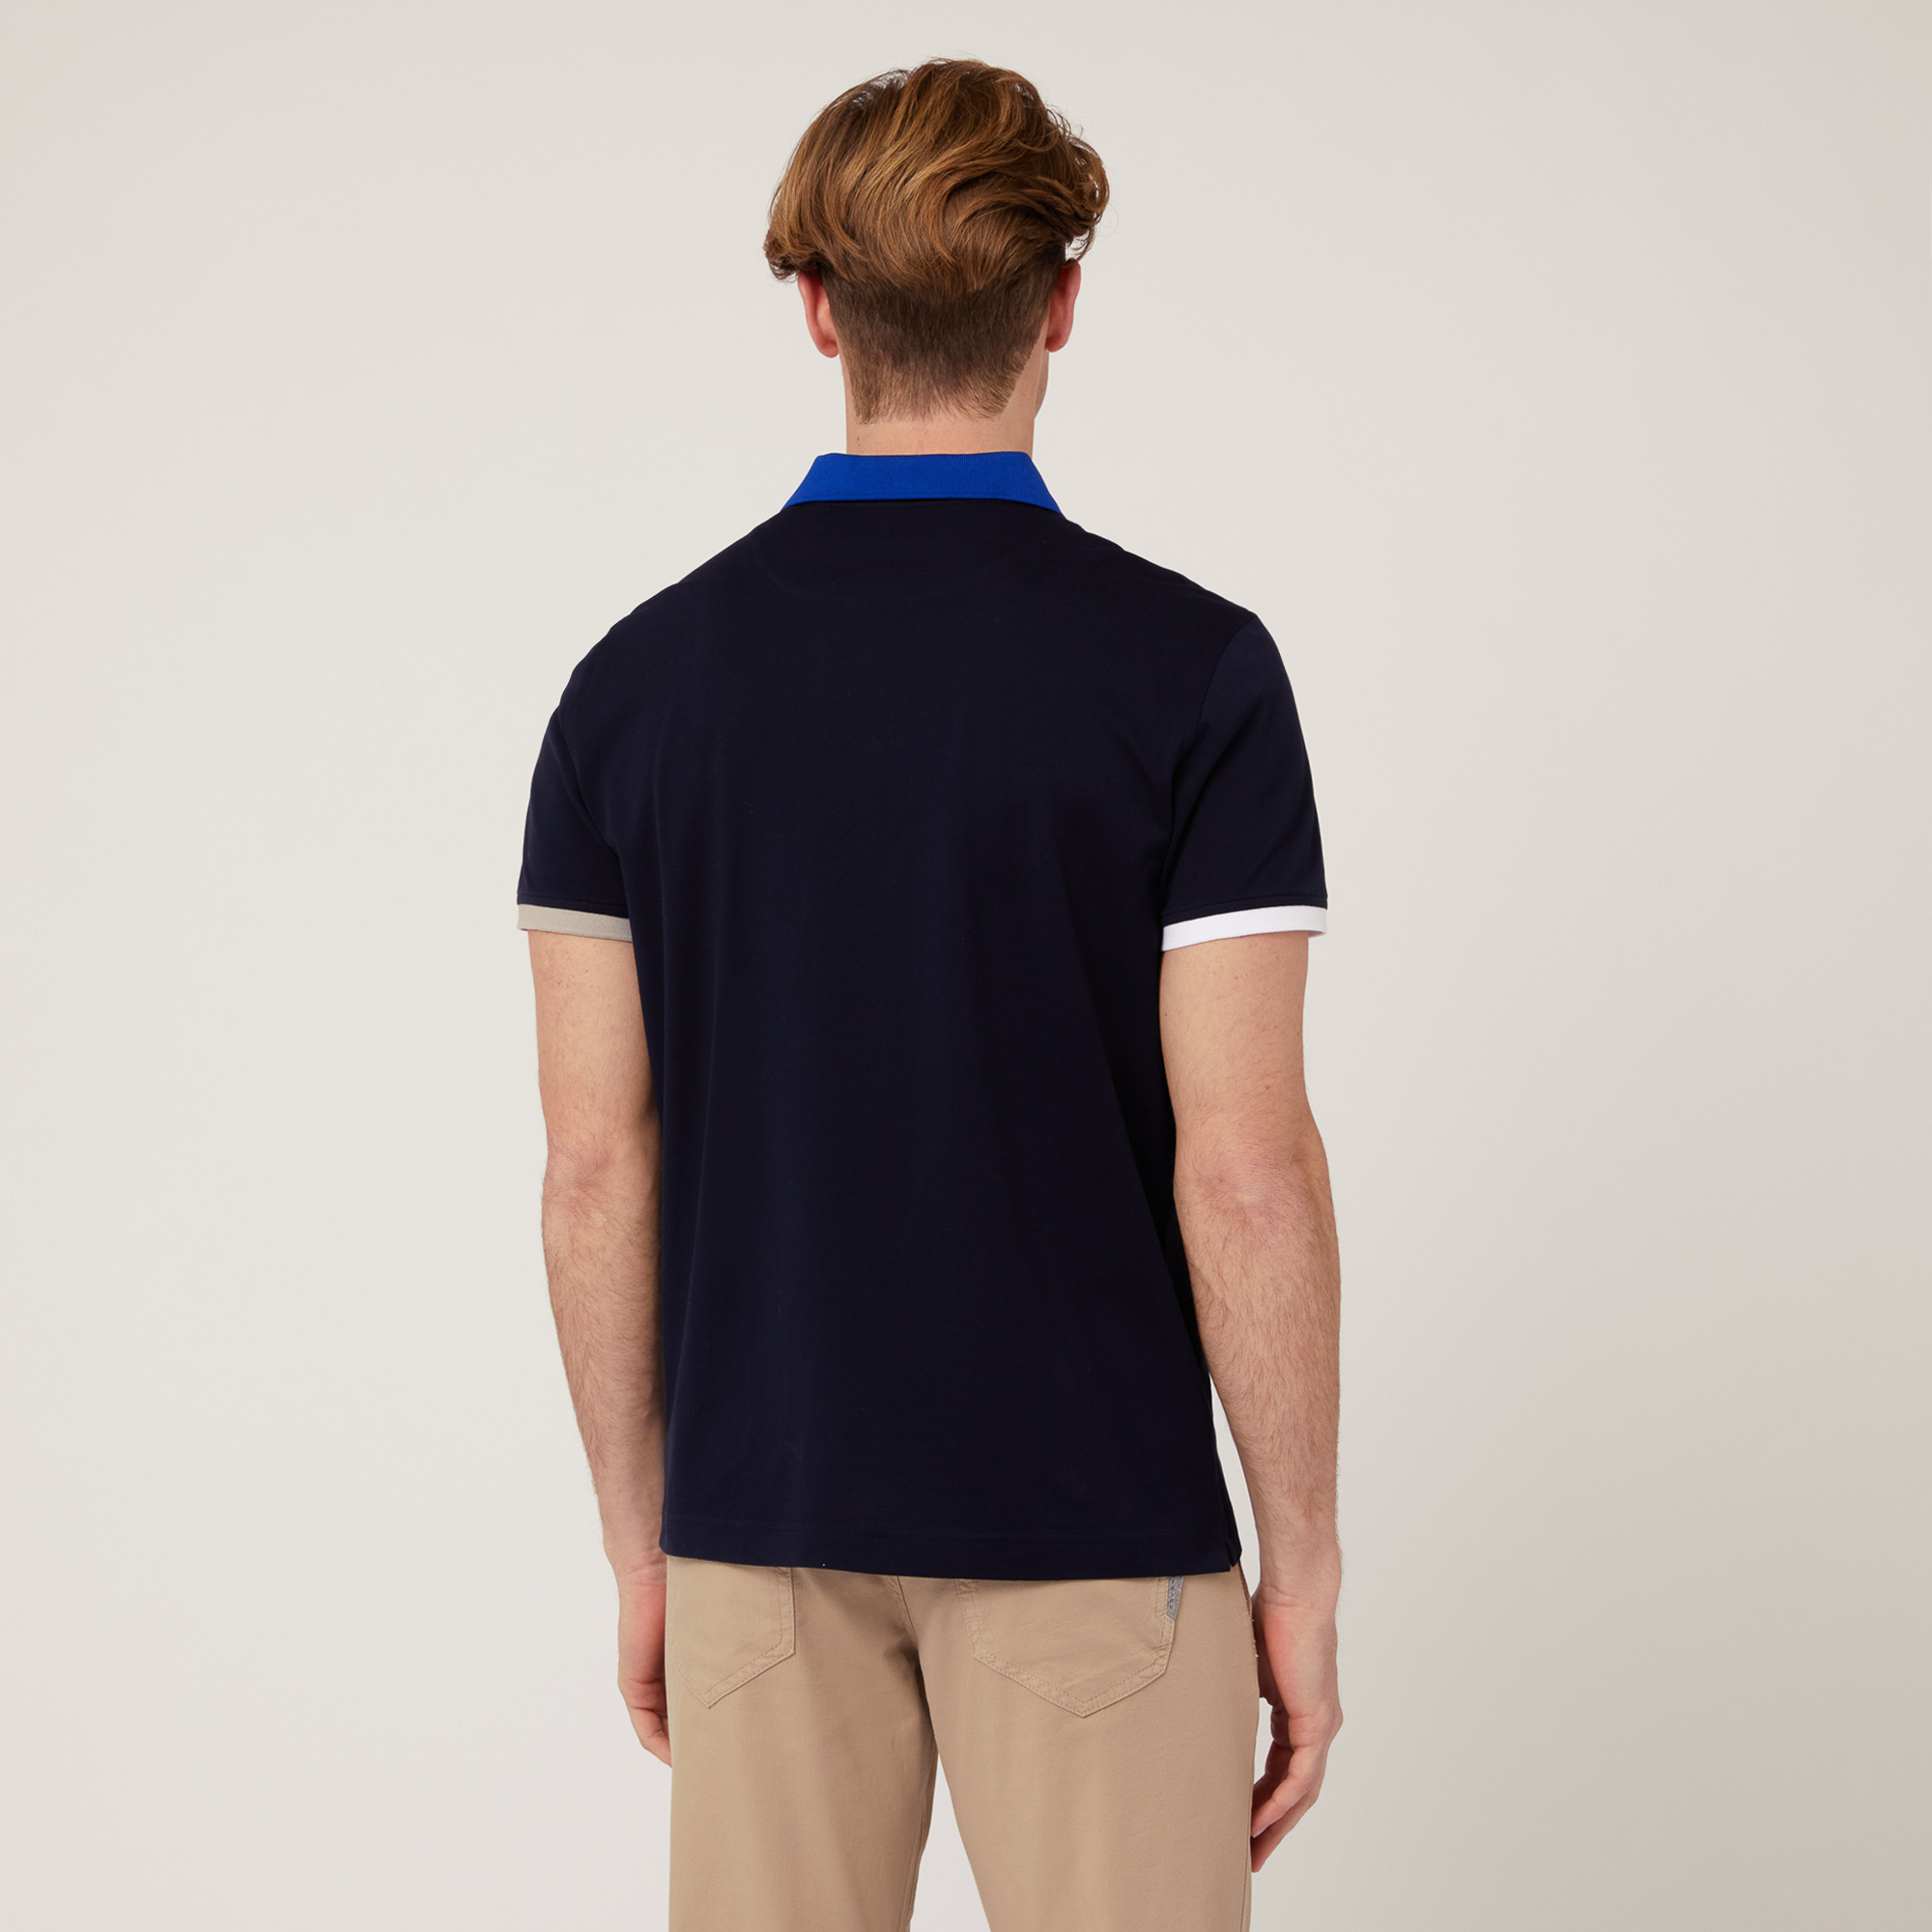 Baumwoll-Poloshirt mit Kontrastfarben, Blau, large image number 1